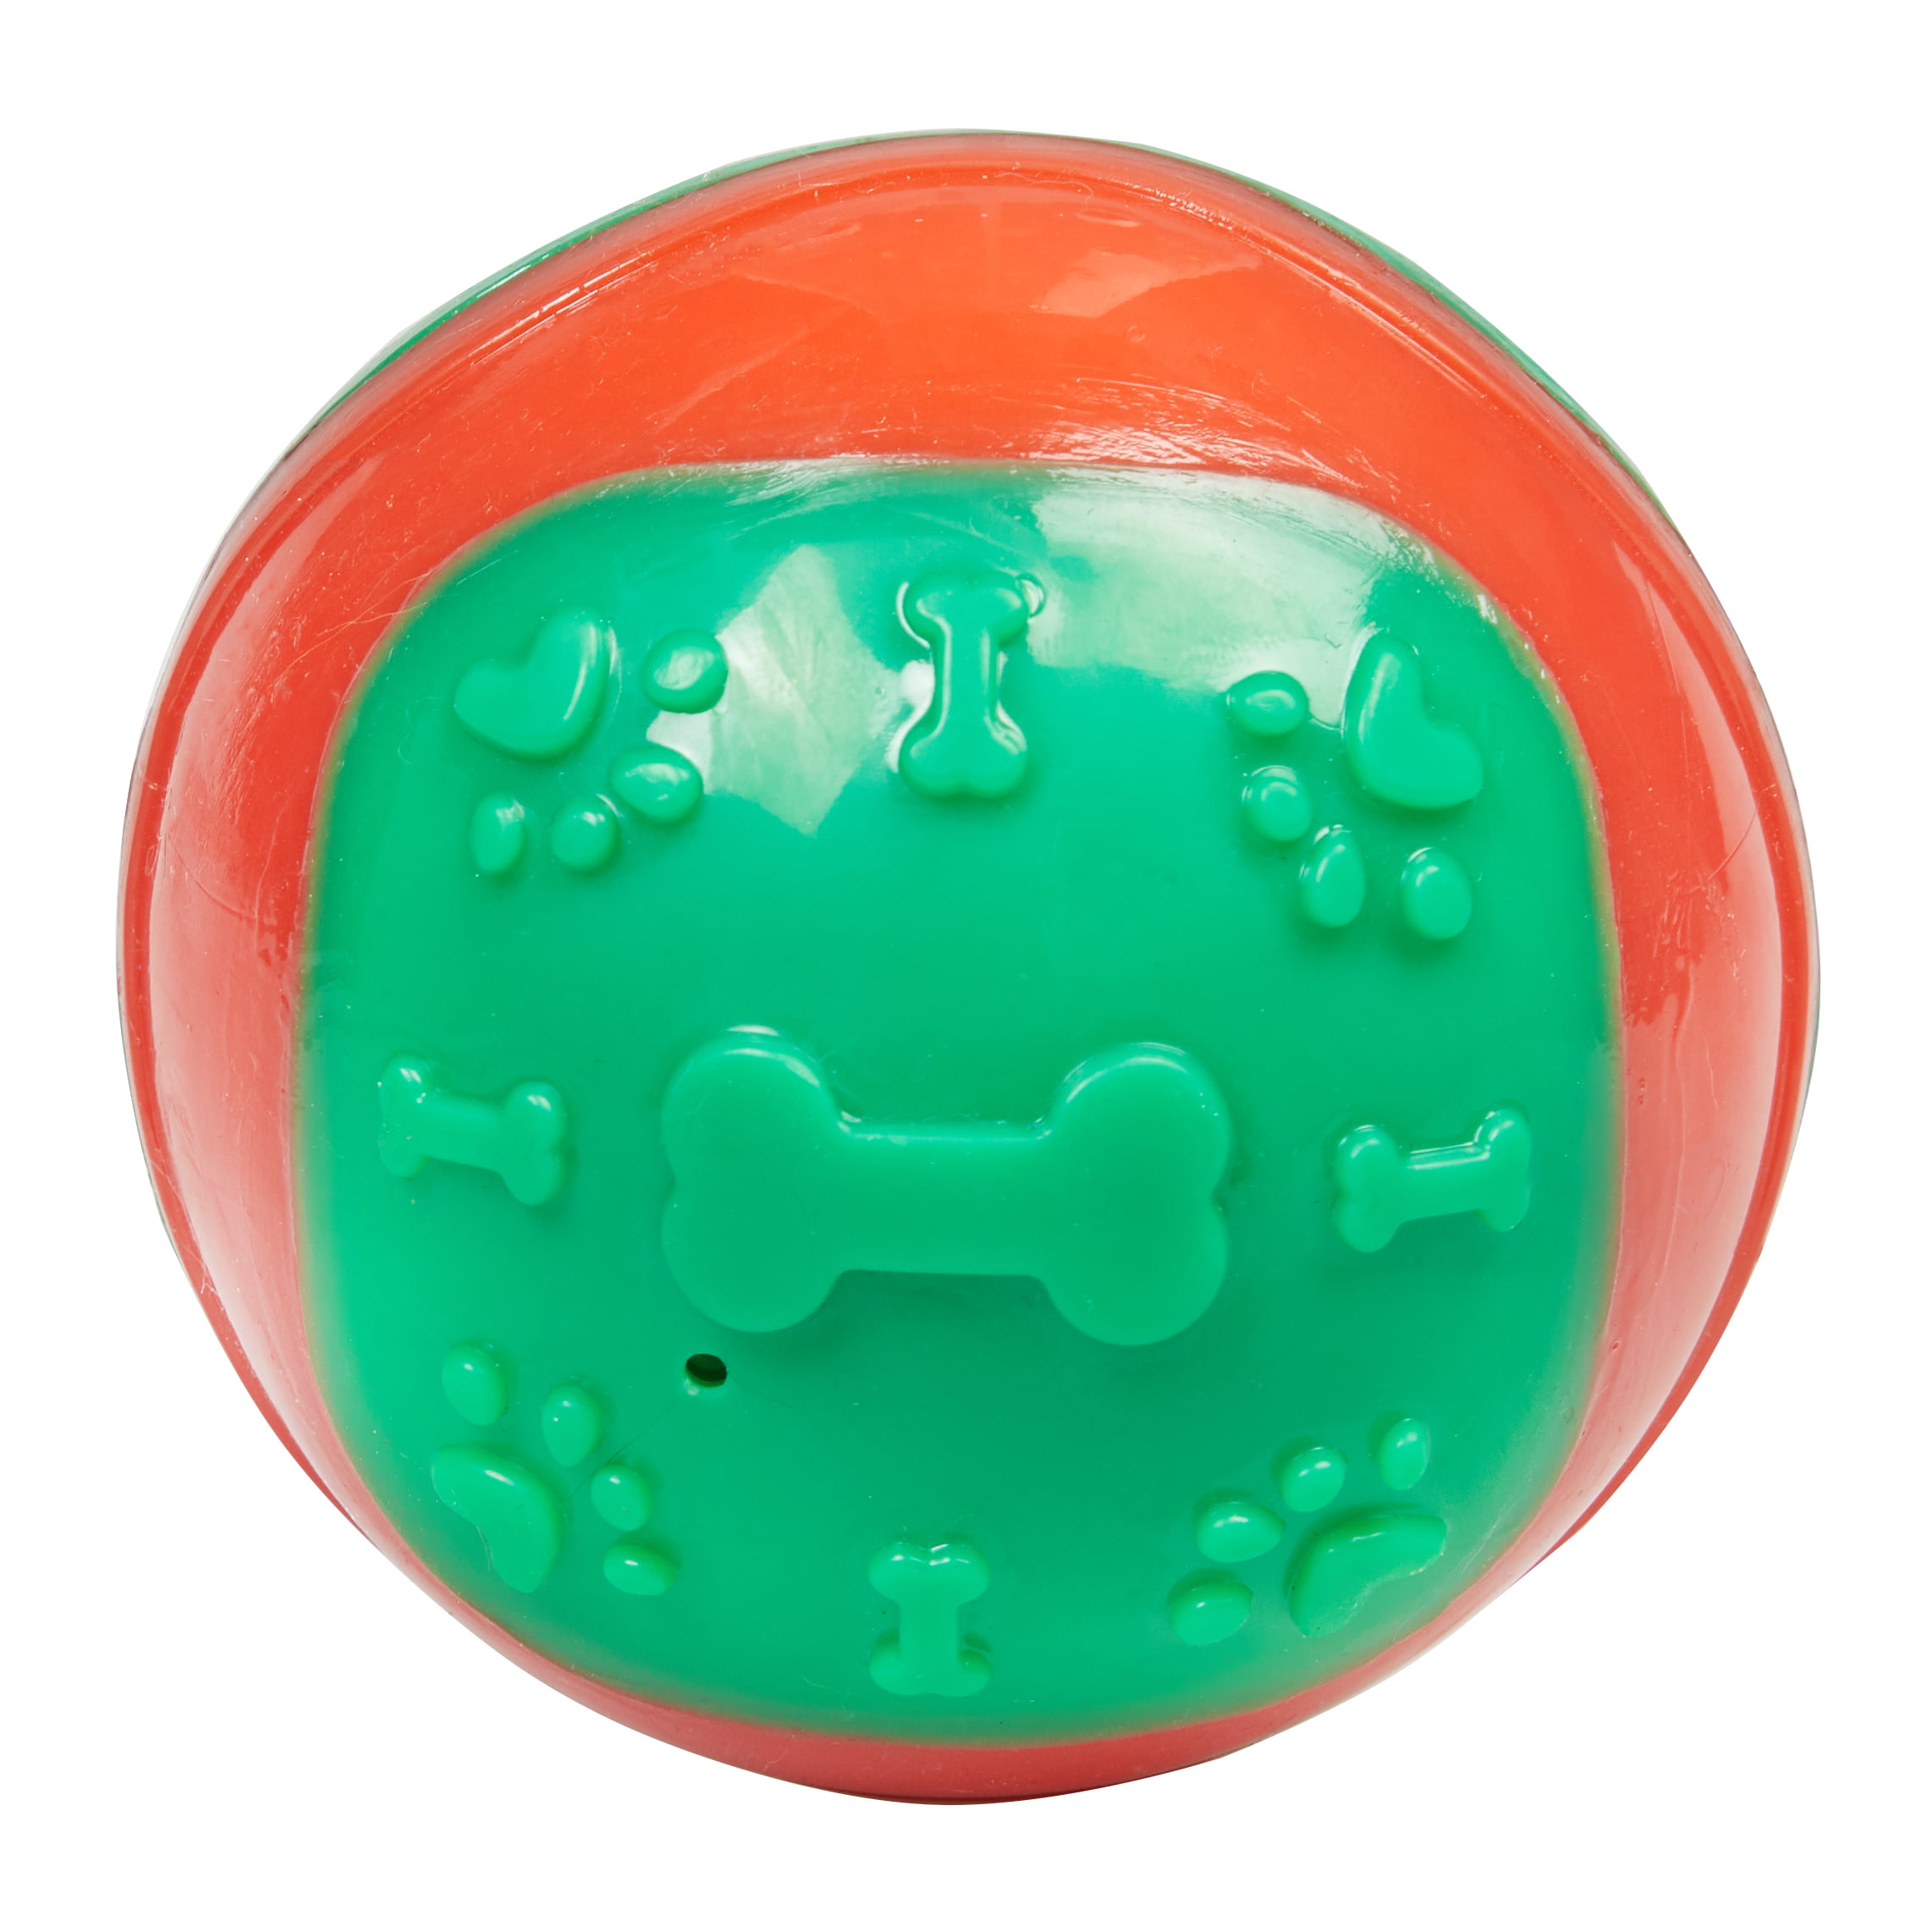 green dog ball